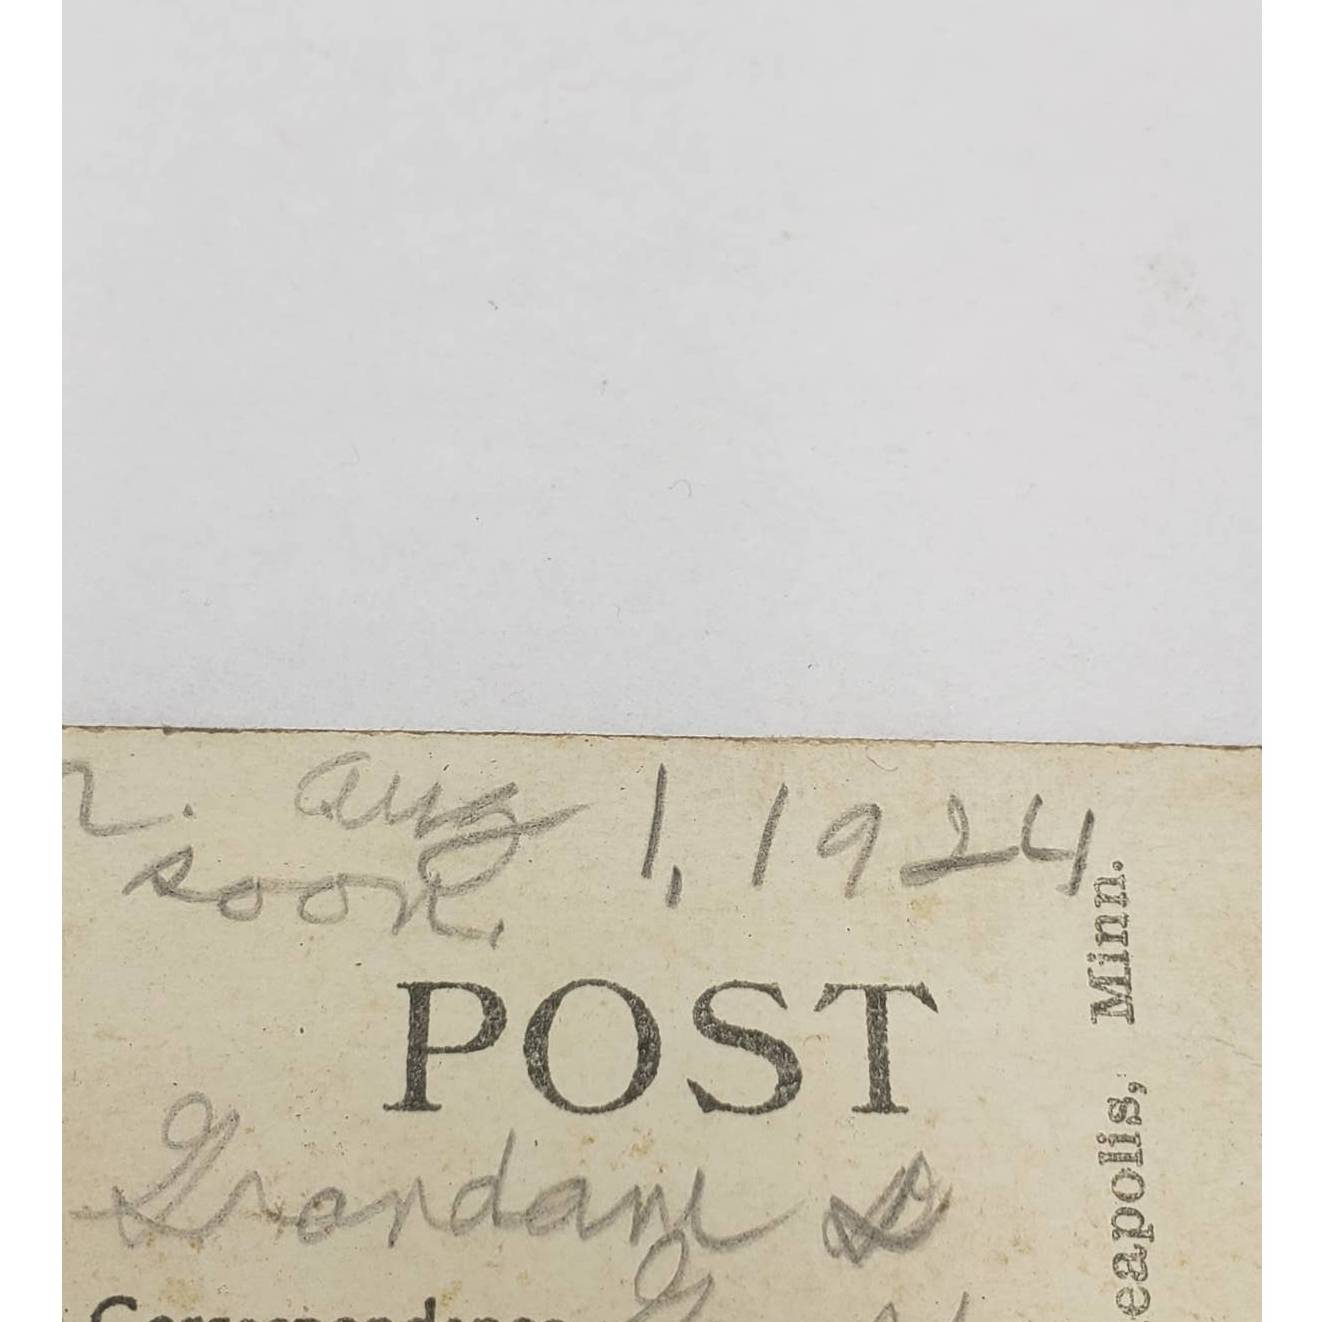 c1924 Refrectory, Minnehaha, Minneapolis, Minnesota 106 Vintage Postcard